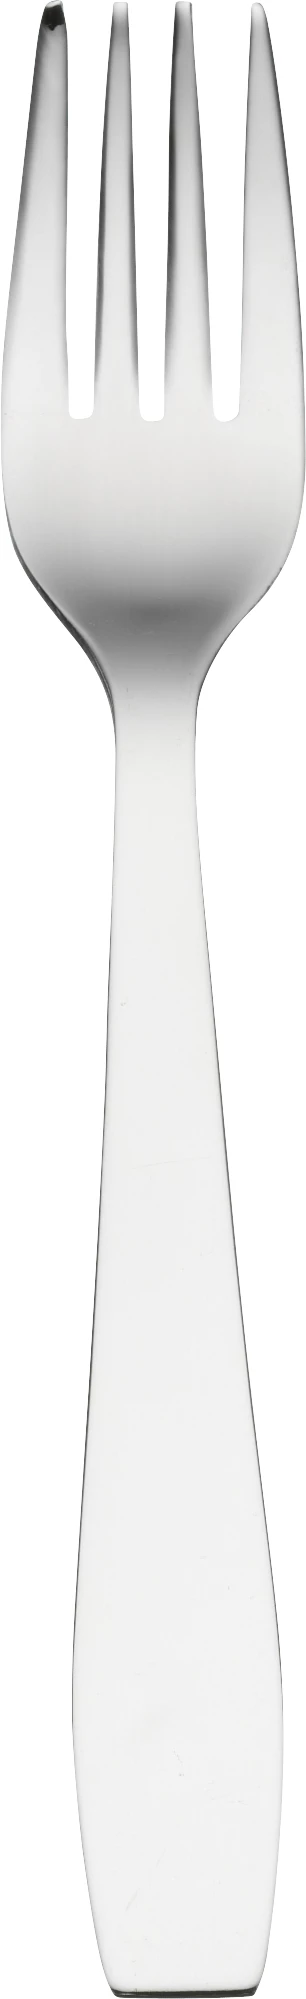 Glat barnegaffel, 14,8 cm